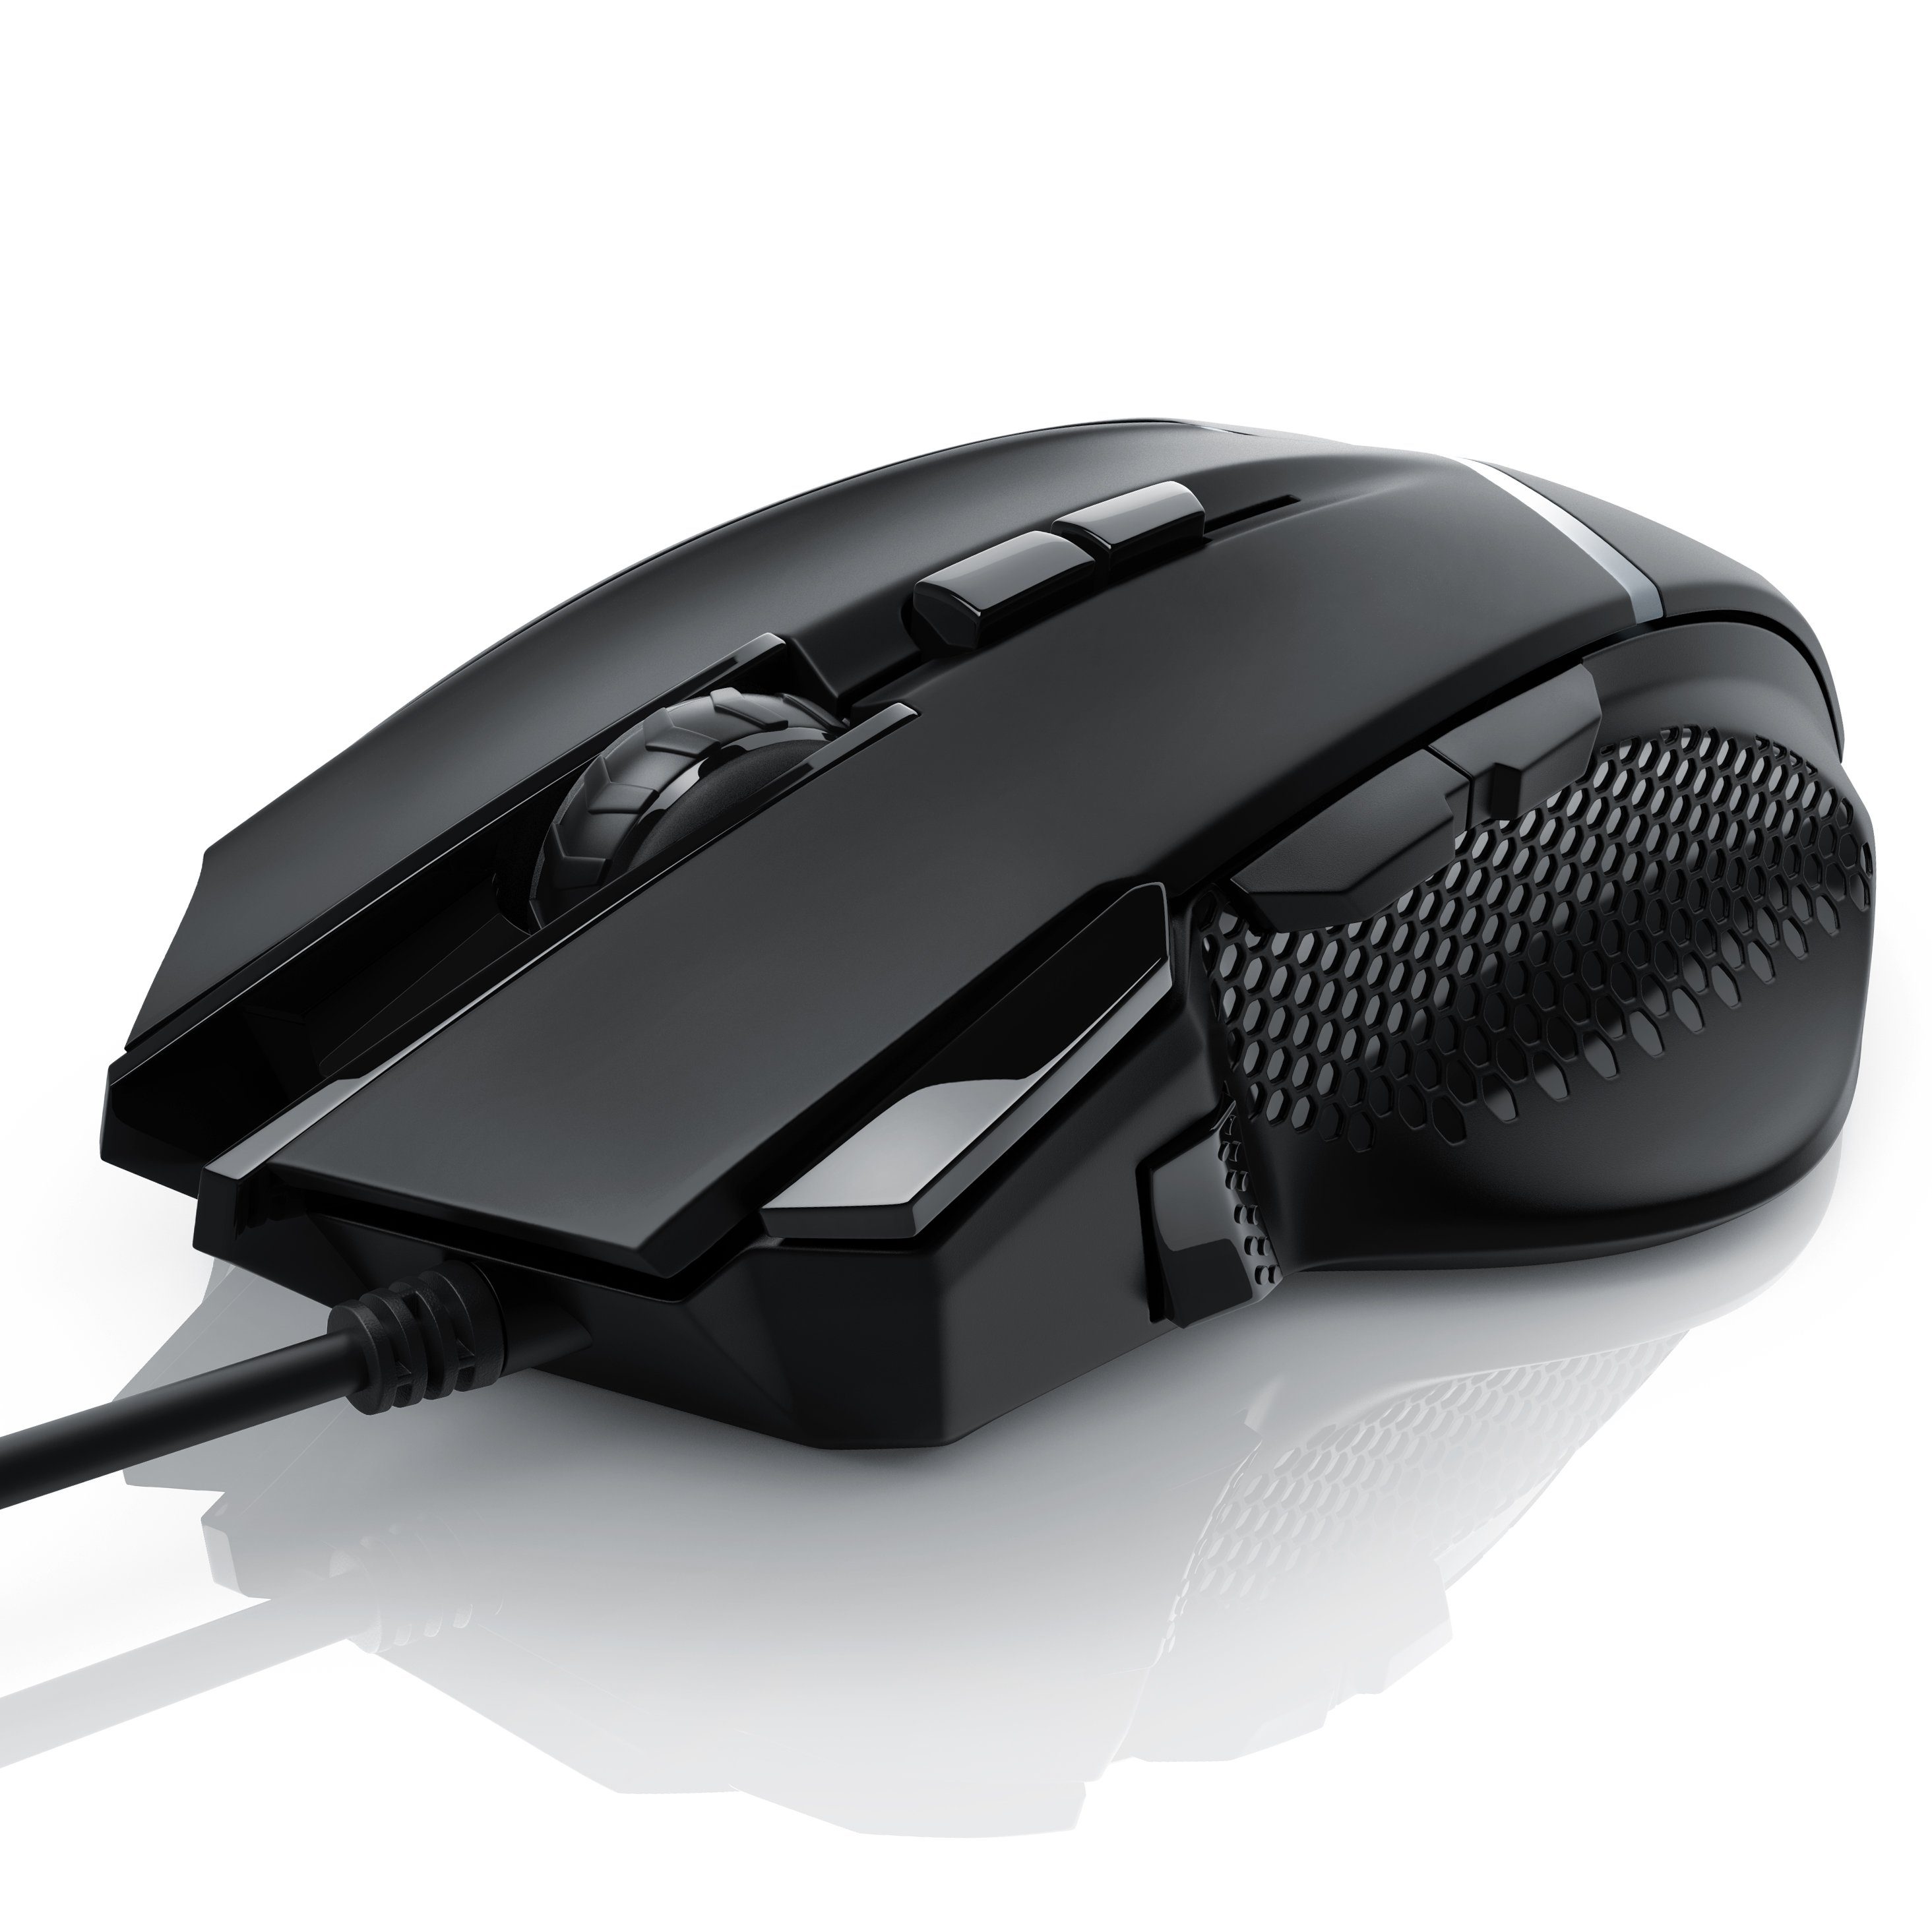 dpi, Gewichten) ergonomisch, Gaming-Maus Mouse dpi, (kabelgebunden, 500 Abtastrate CSL 3200 inkl. wählbar,